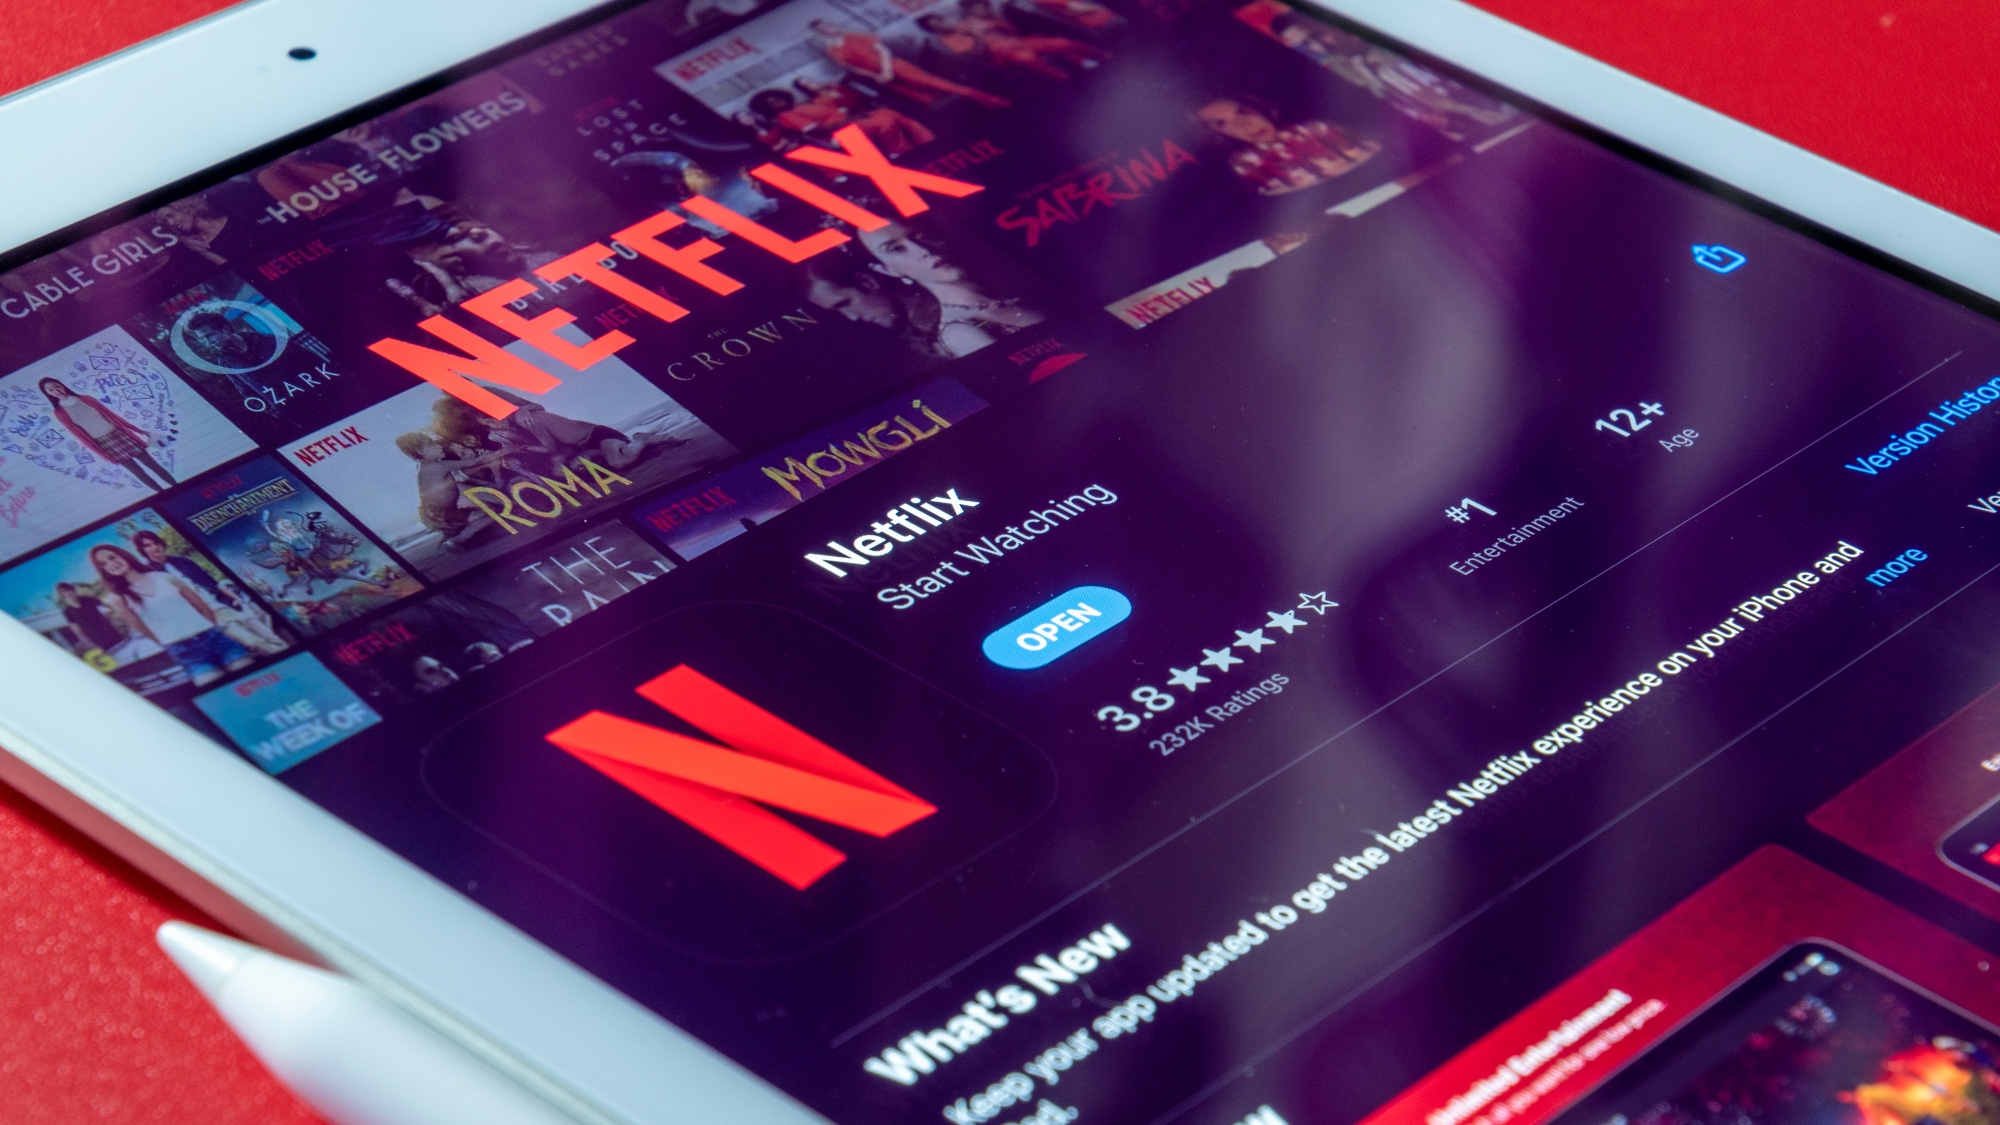 Netflix cancela plano básico a partir da próxima semana -  